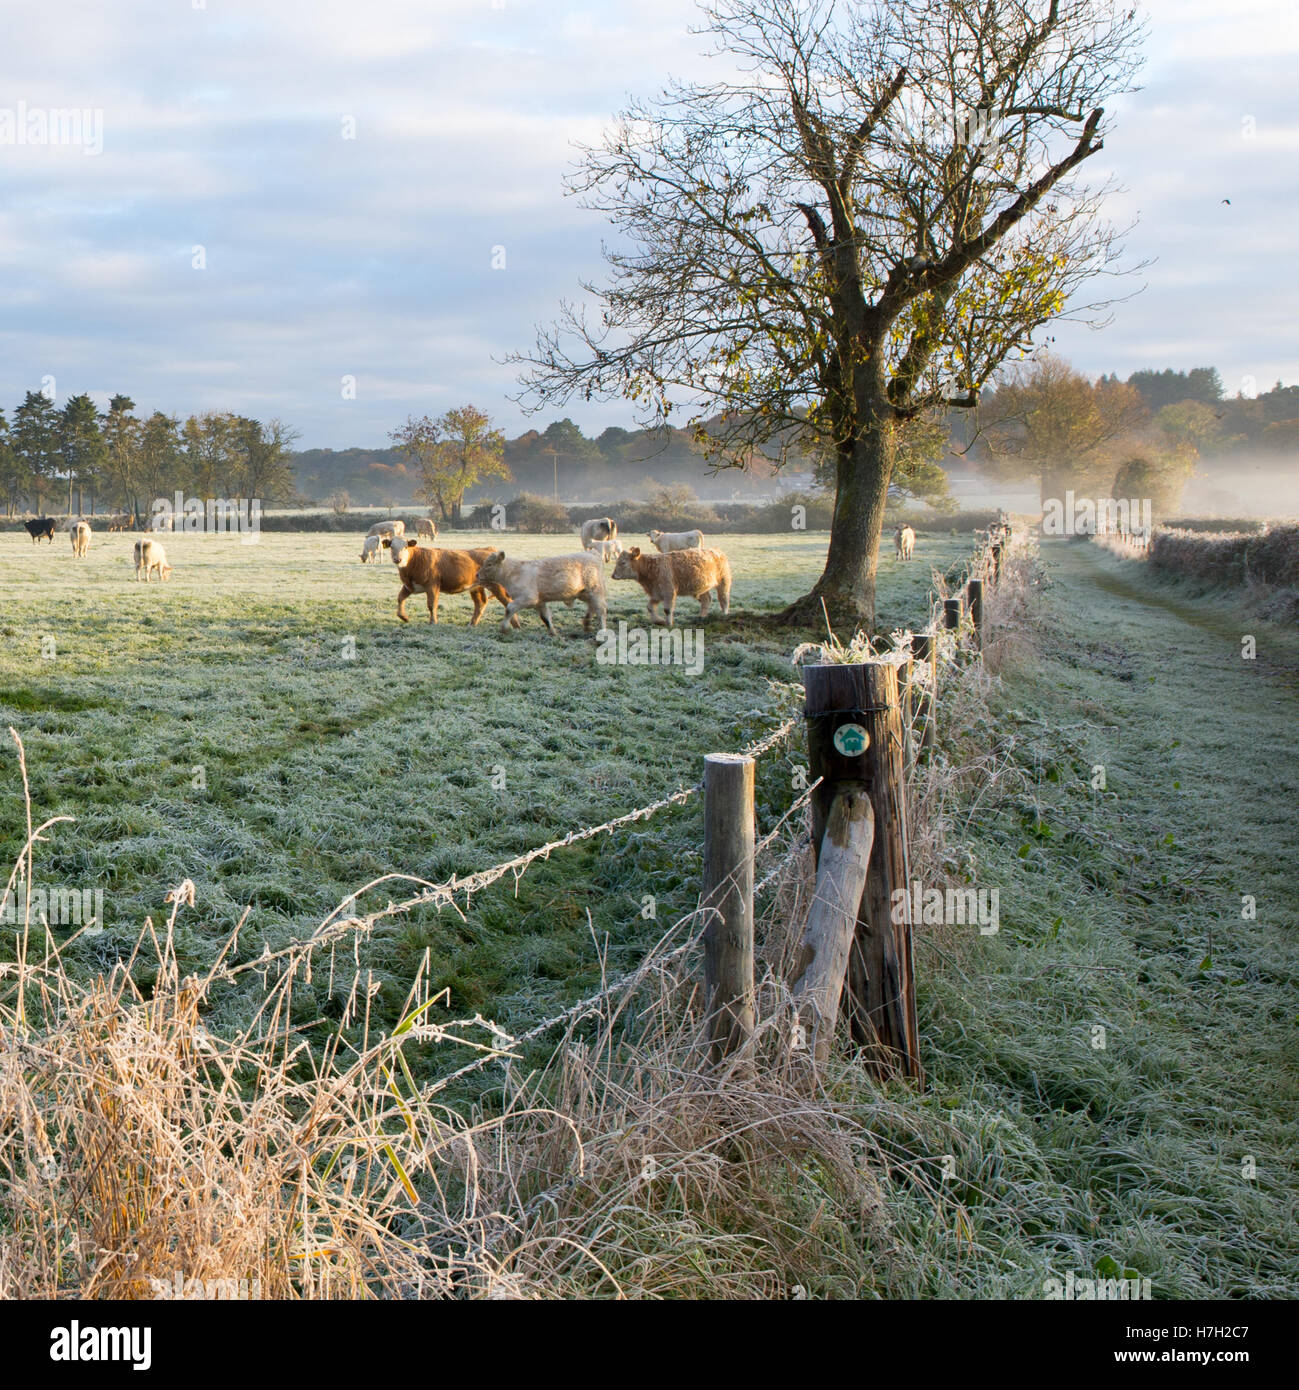 Vaches dans un champ à côté d'un arbre dans un matin d'hiver glacial, campagne, scène de la rivière Avon Valley sur le bord de la New Forest, Hampshire, England, UK Banque D'Images